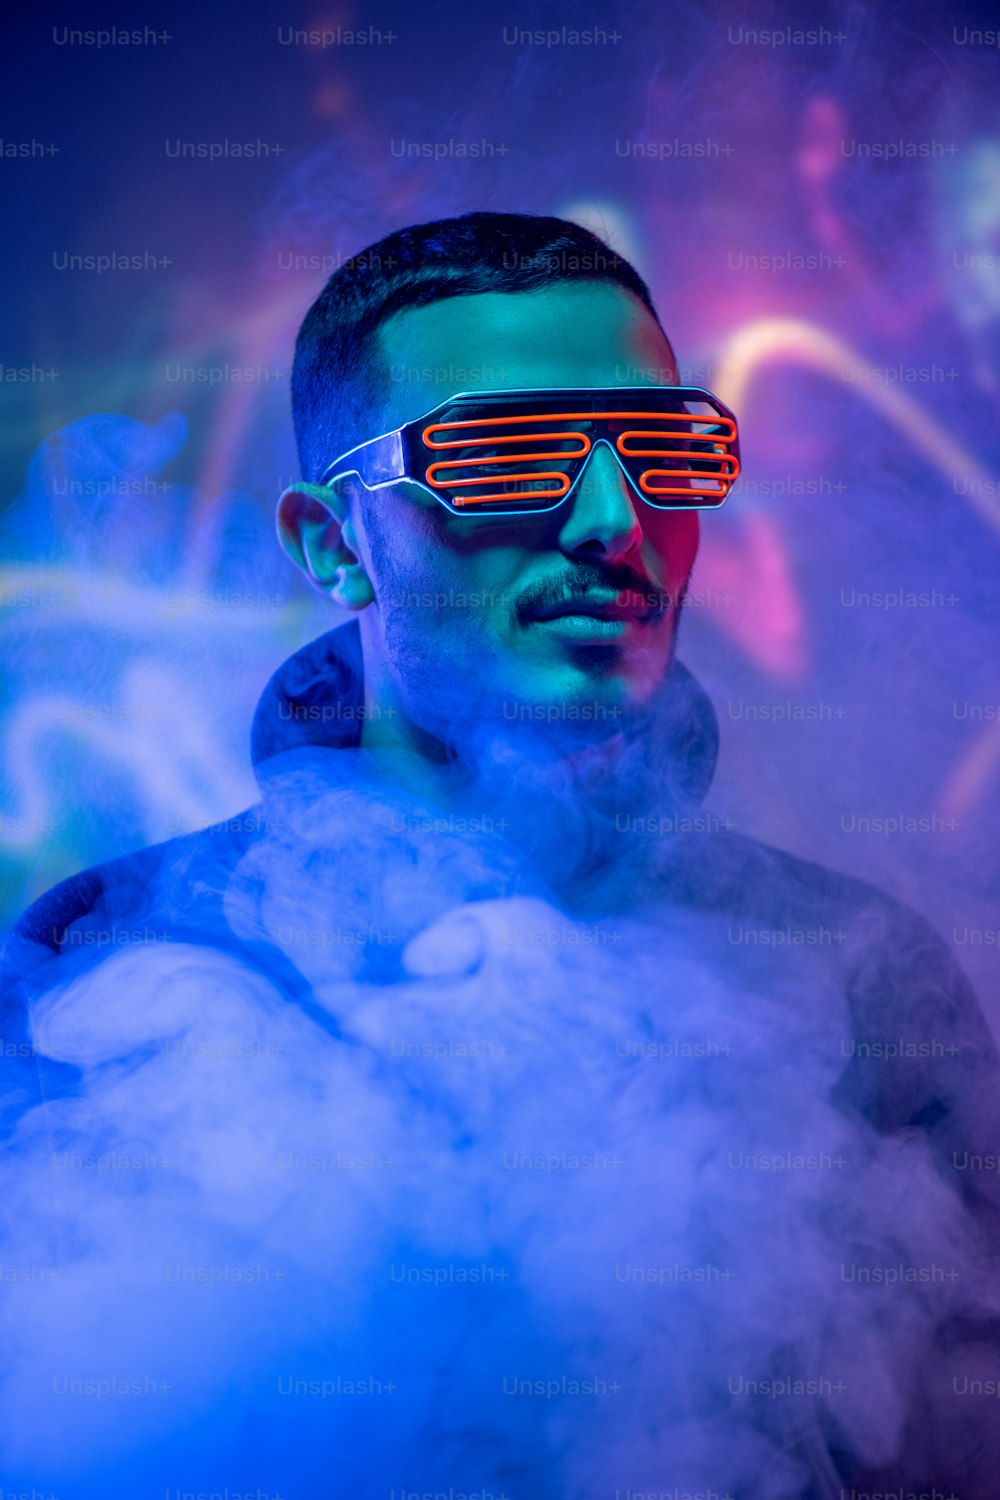 Chef d’un jeune métis contemporain portant des lunettes spiralées rouges parmi la fumée et la lumière bleue au néon